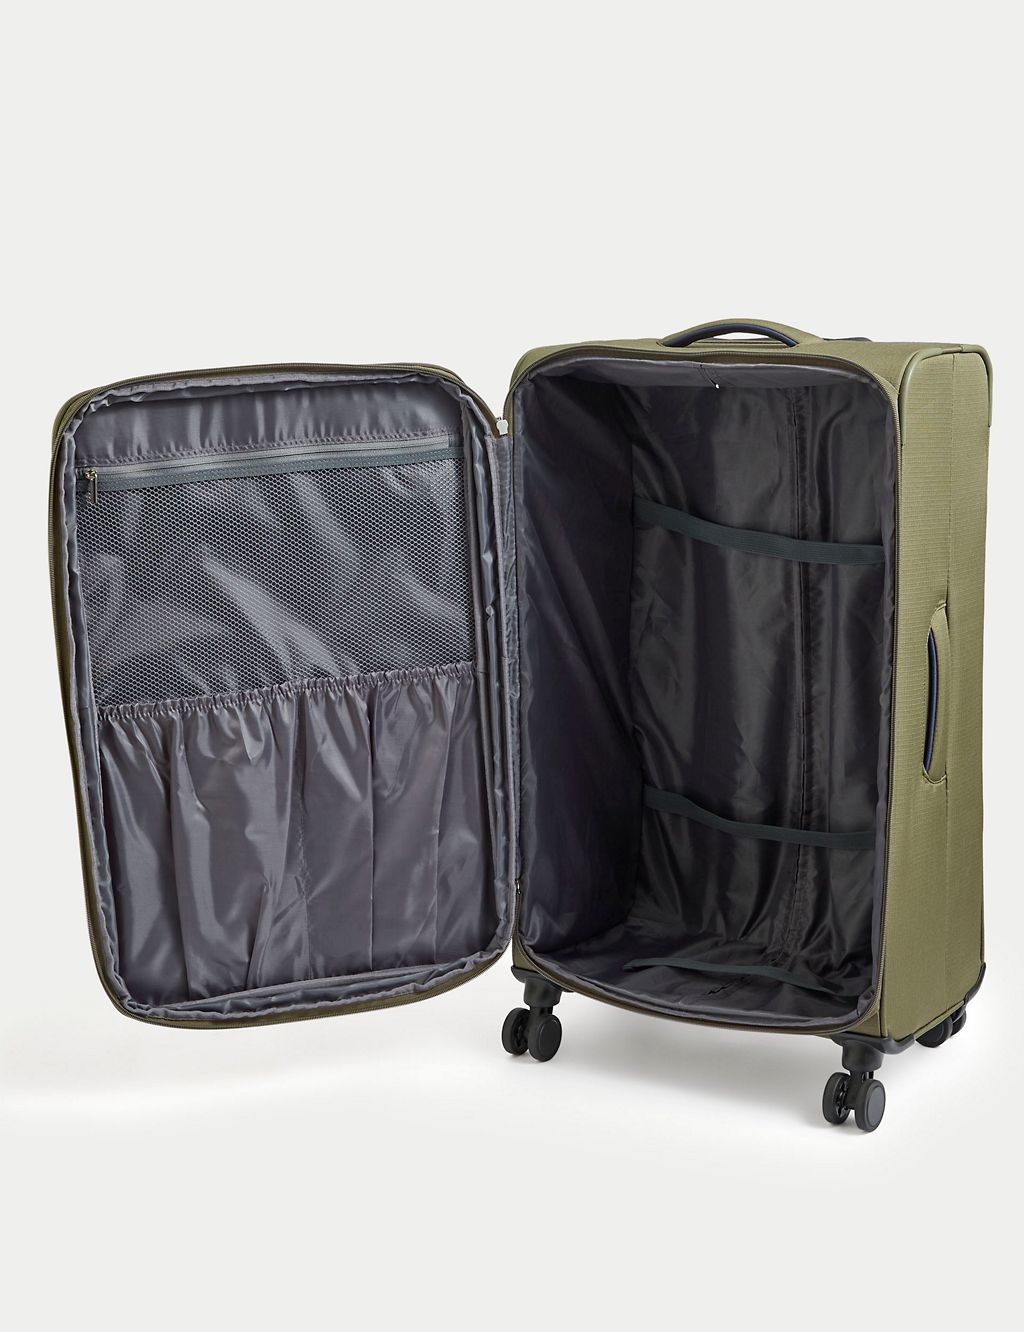 Seville 4 Wheel Soft Large Suitcase 4 of 9